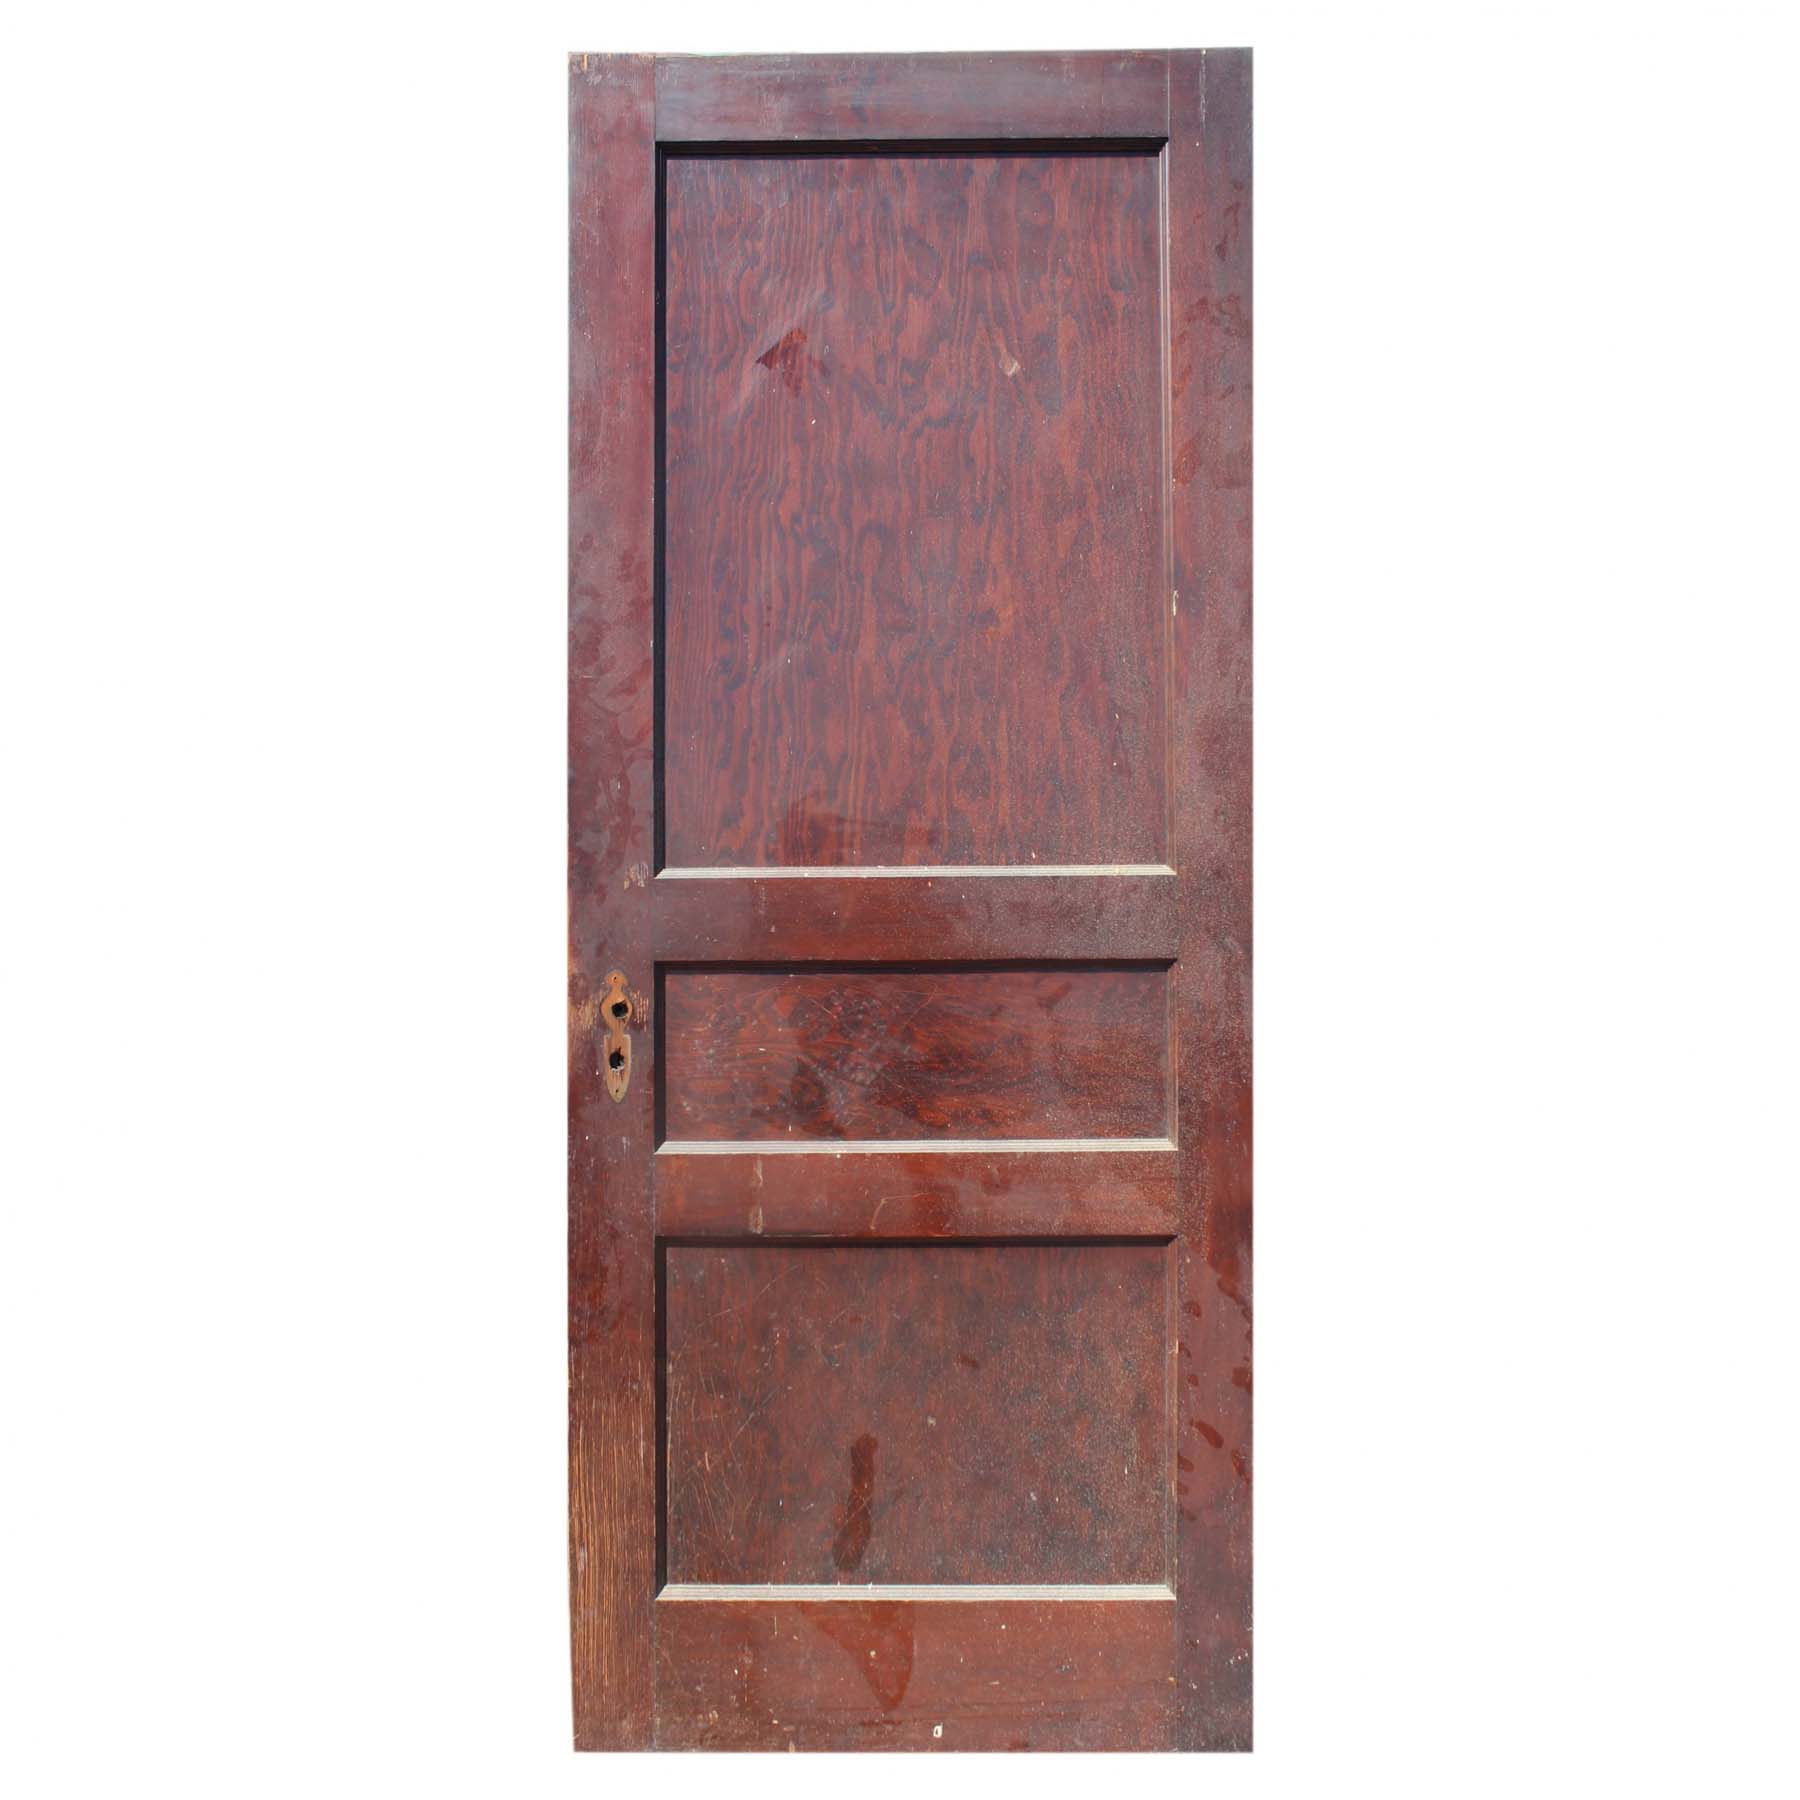 SOLD Salvaged 32” Three-Panel Solid Wood Door-71724